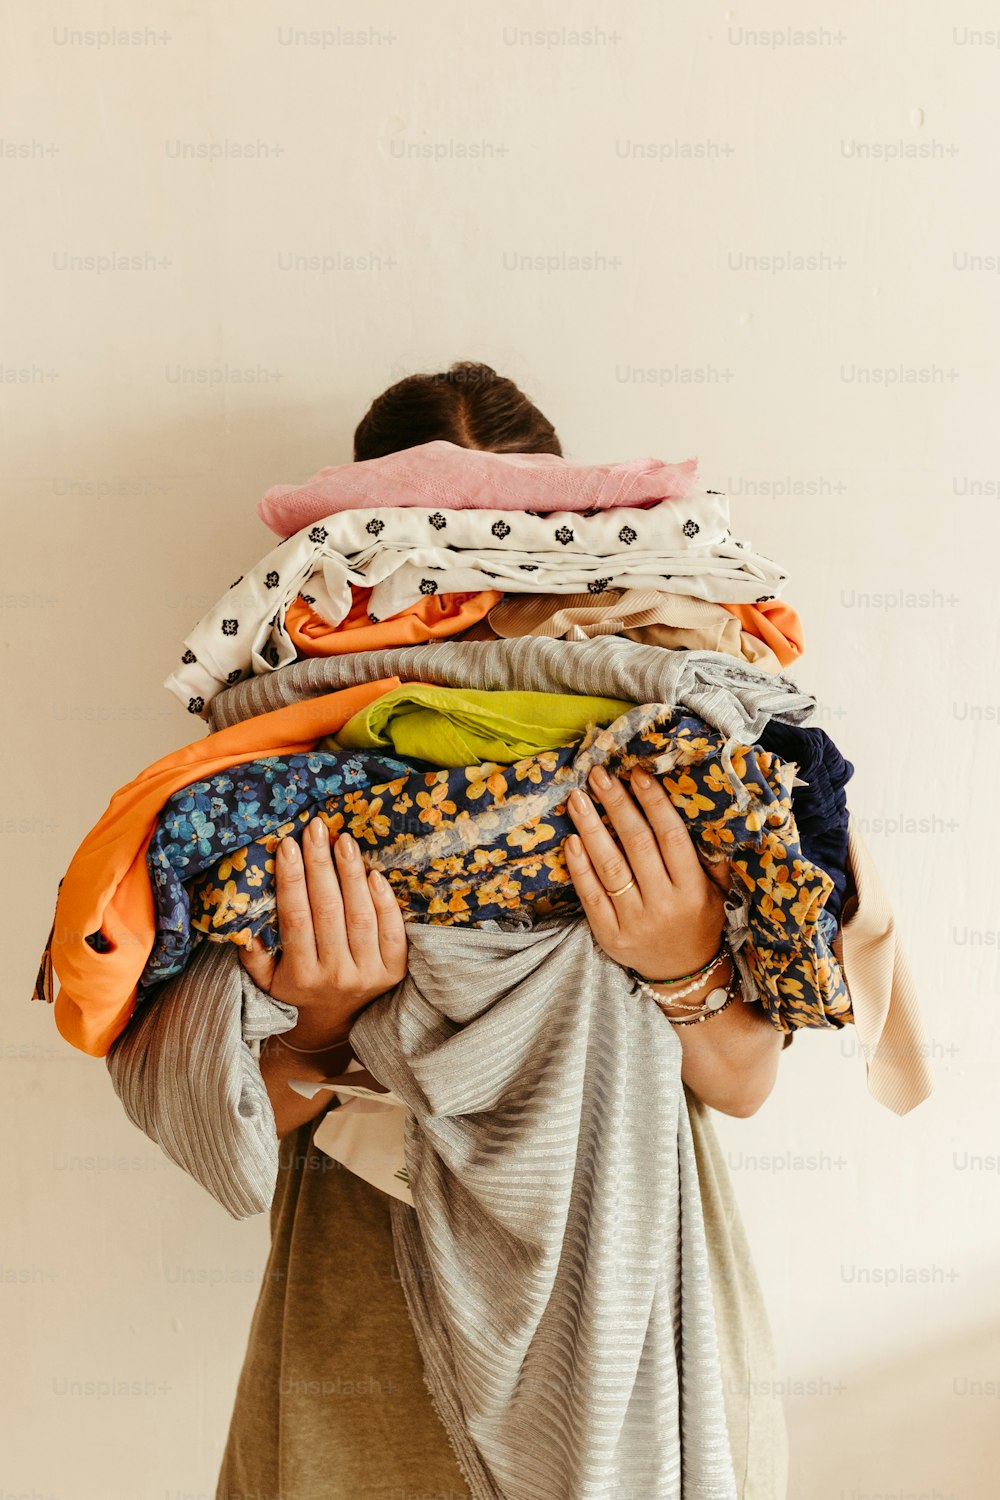 Una mujer sosteniendo un montón de ropa encima de su cabeza